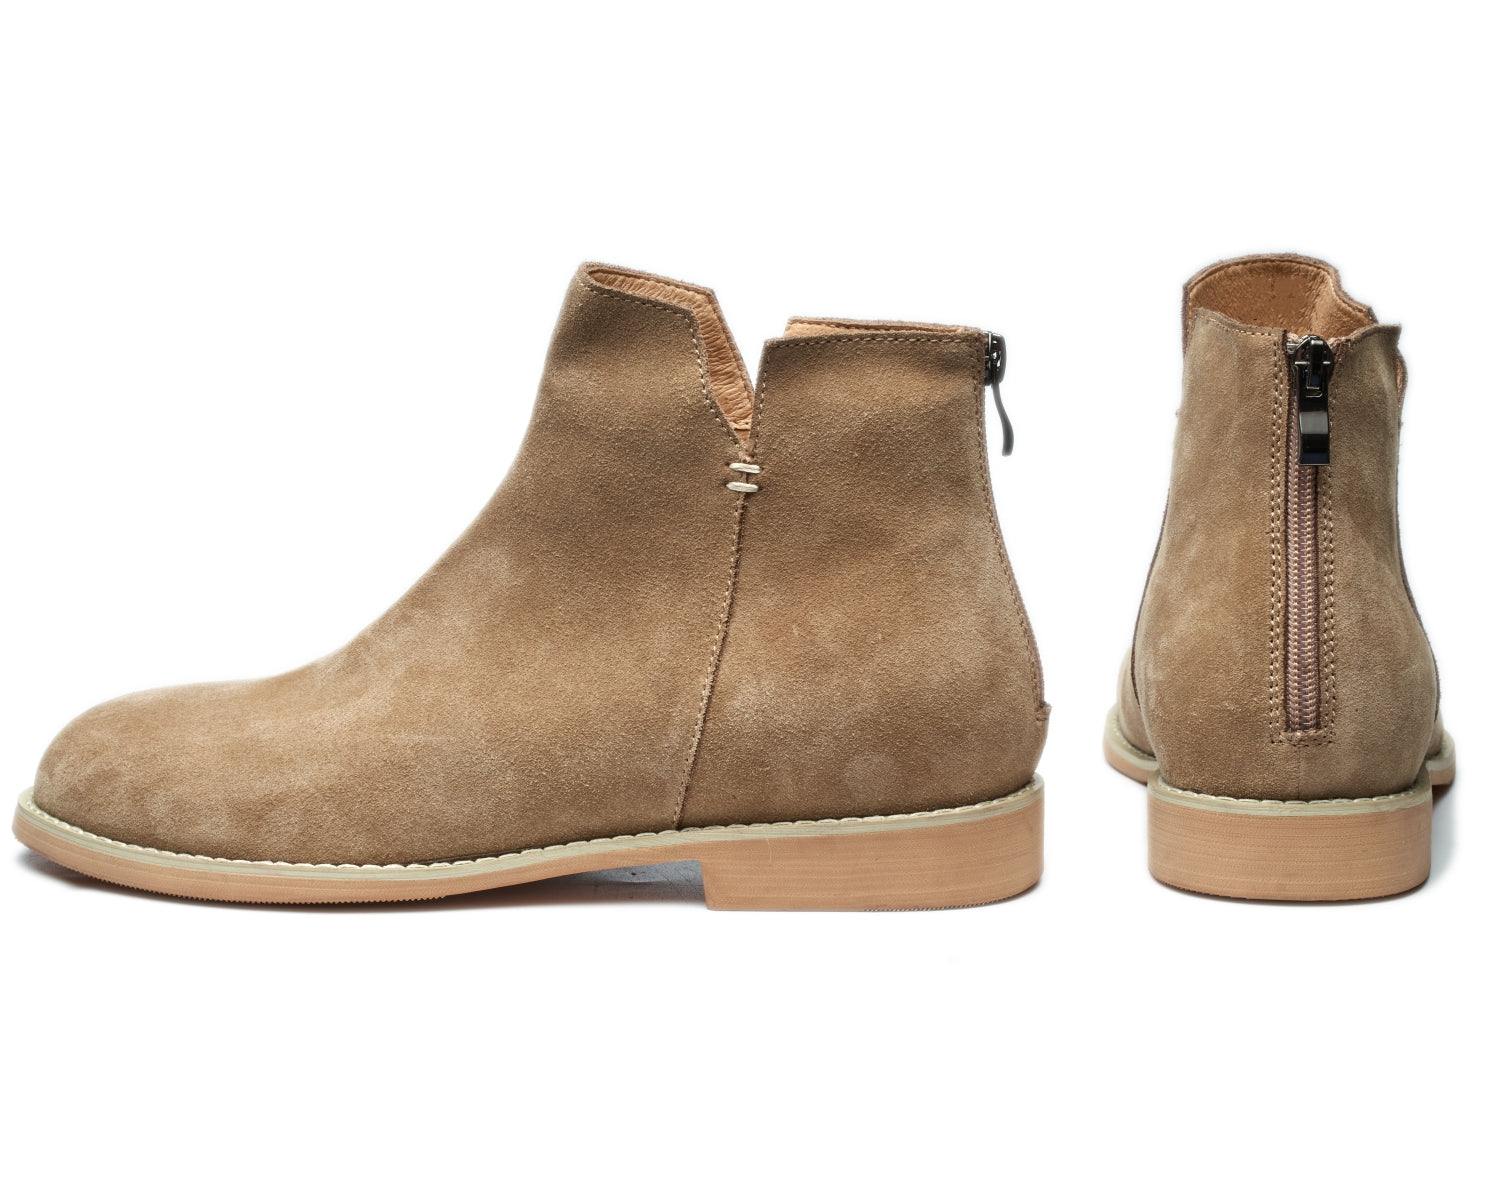 Men's Retro Simple Round Toe Versatile Genuine Leather Desert Boots8